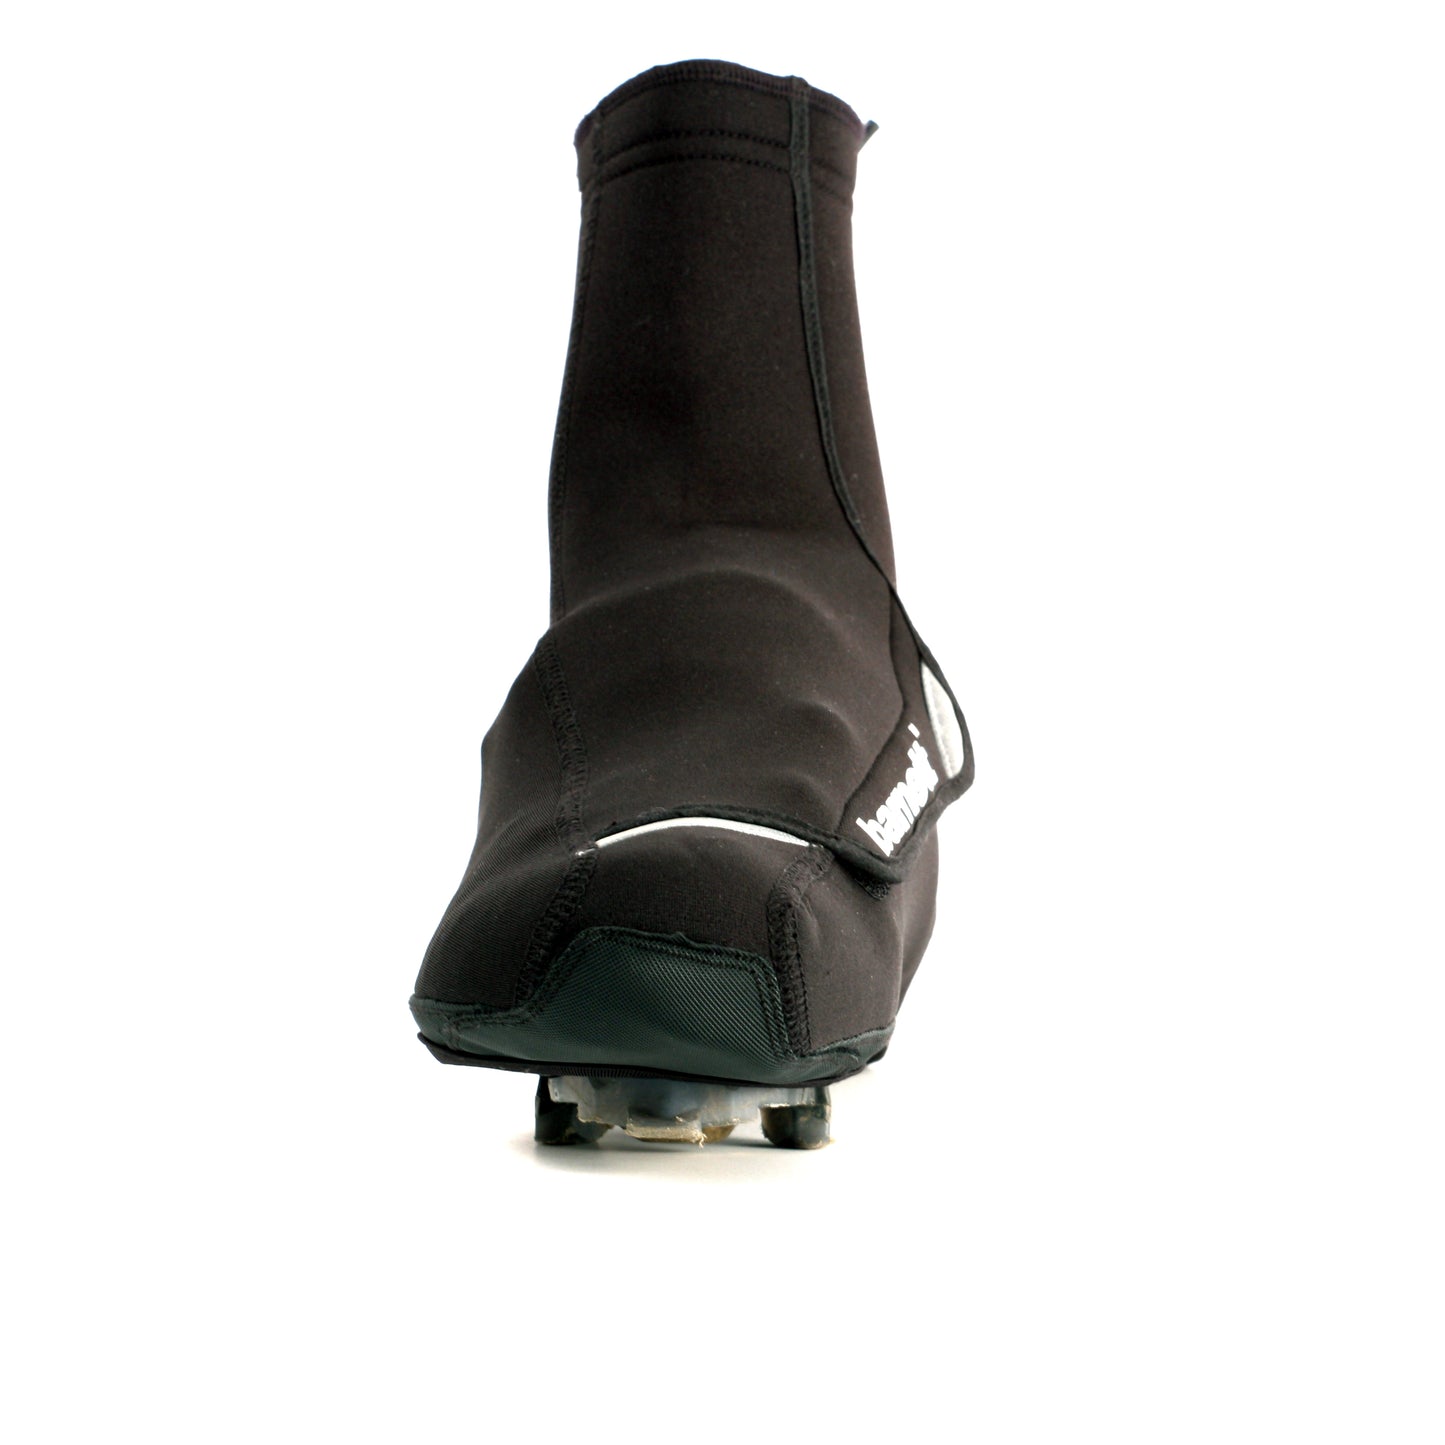 BSP-03 Pokrowiec rowerowy na buty, kolor : czarny